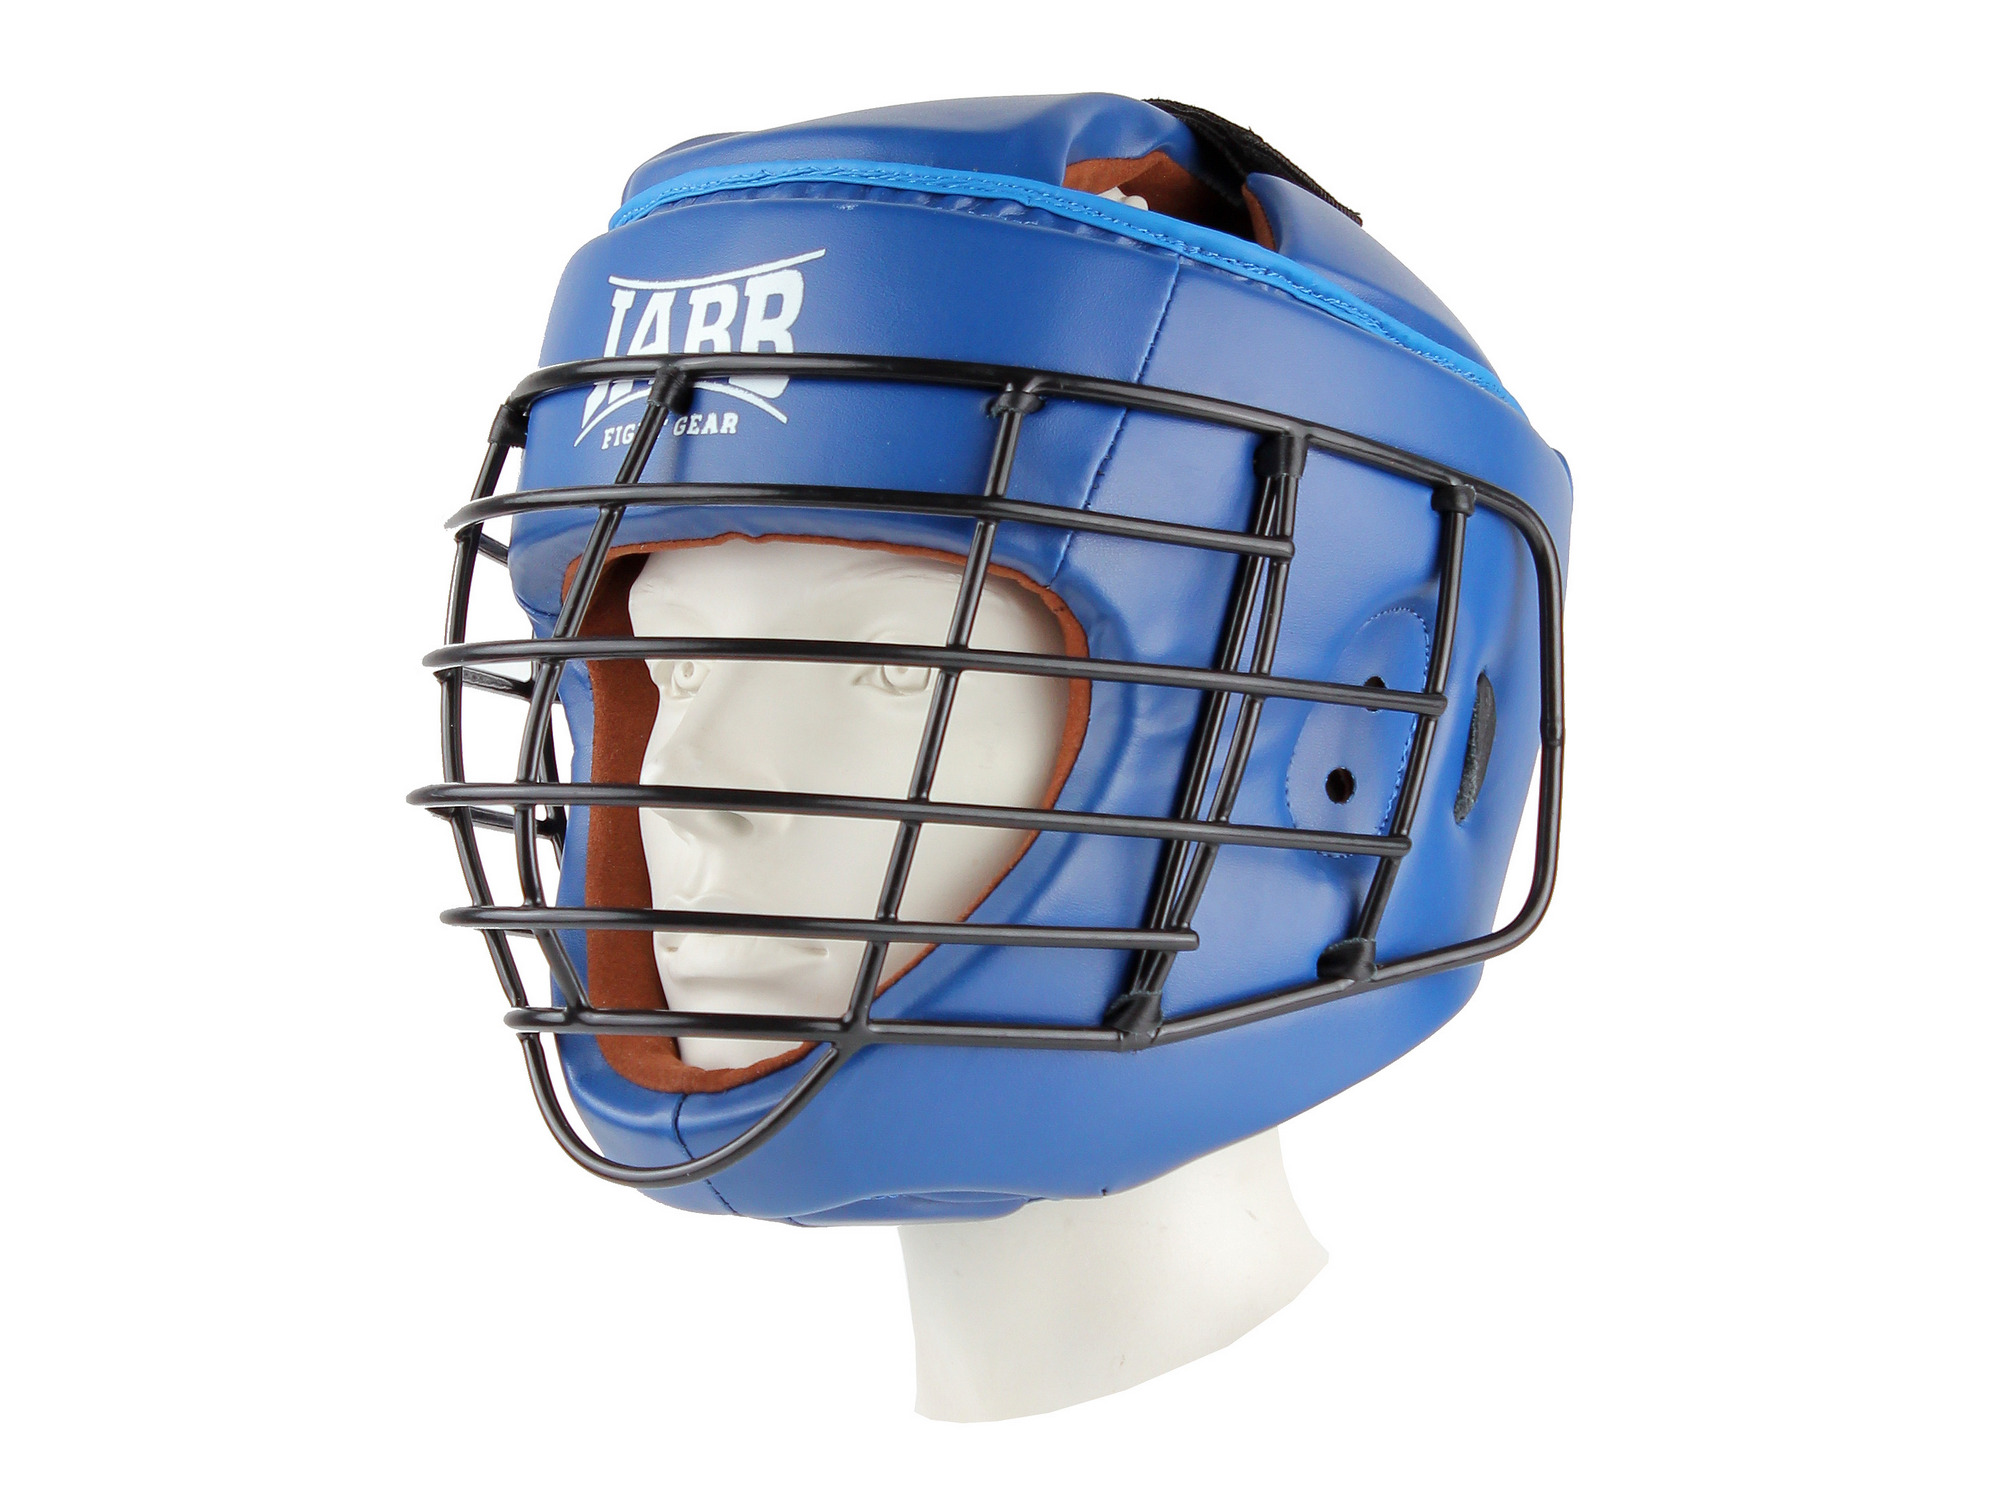 Шлем для рукопашного боя с защитной маской (иск.кожа) Jabb JE-6012, синий, размер 2000_1500